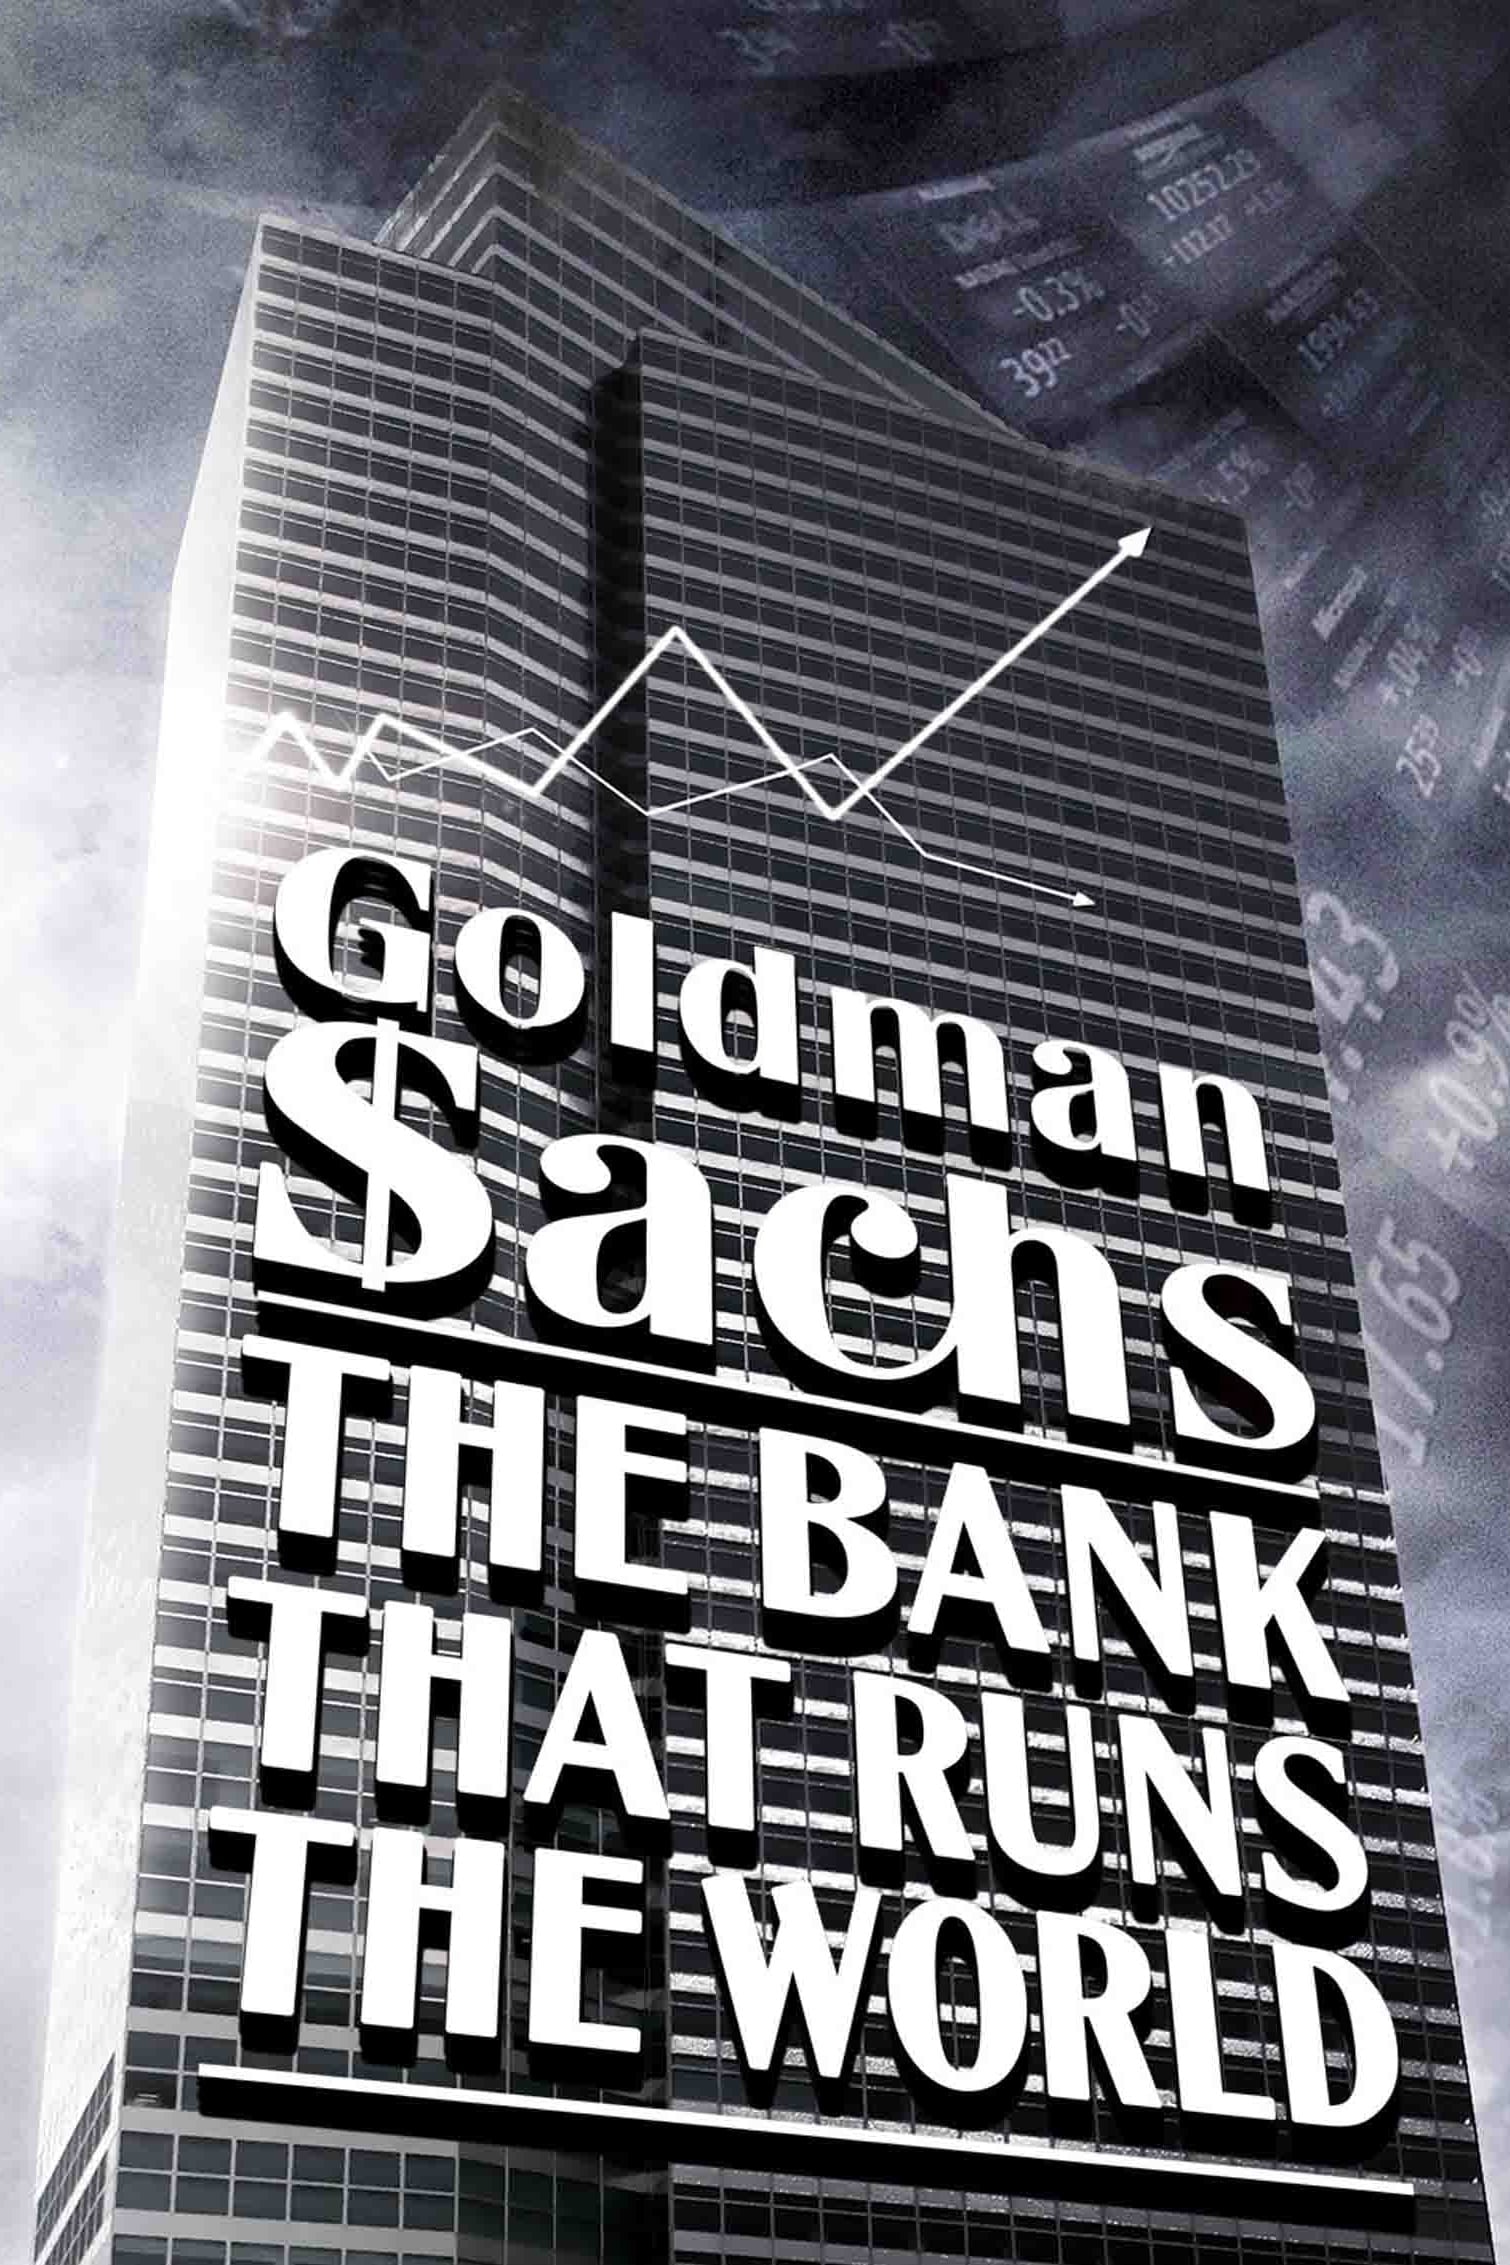 Goldman Sachs, la banque qui dirige le monde